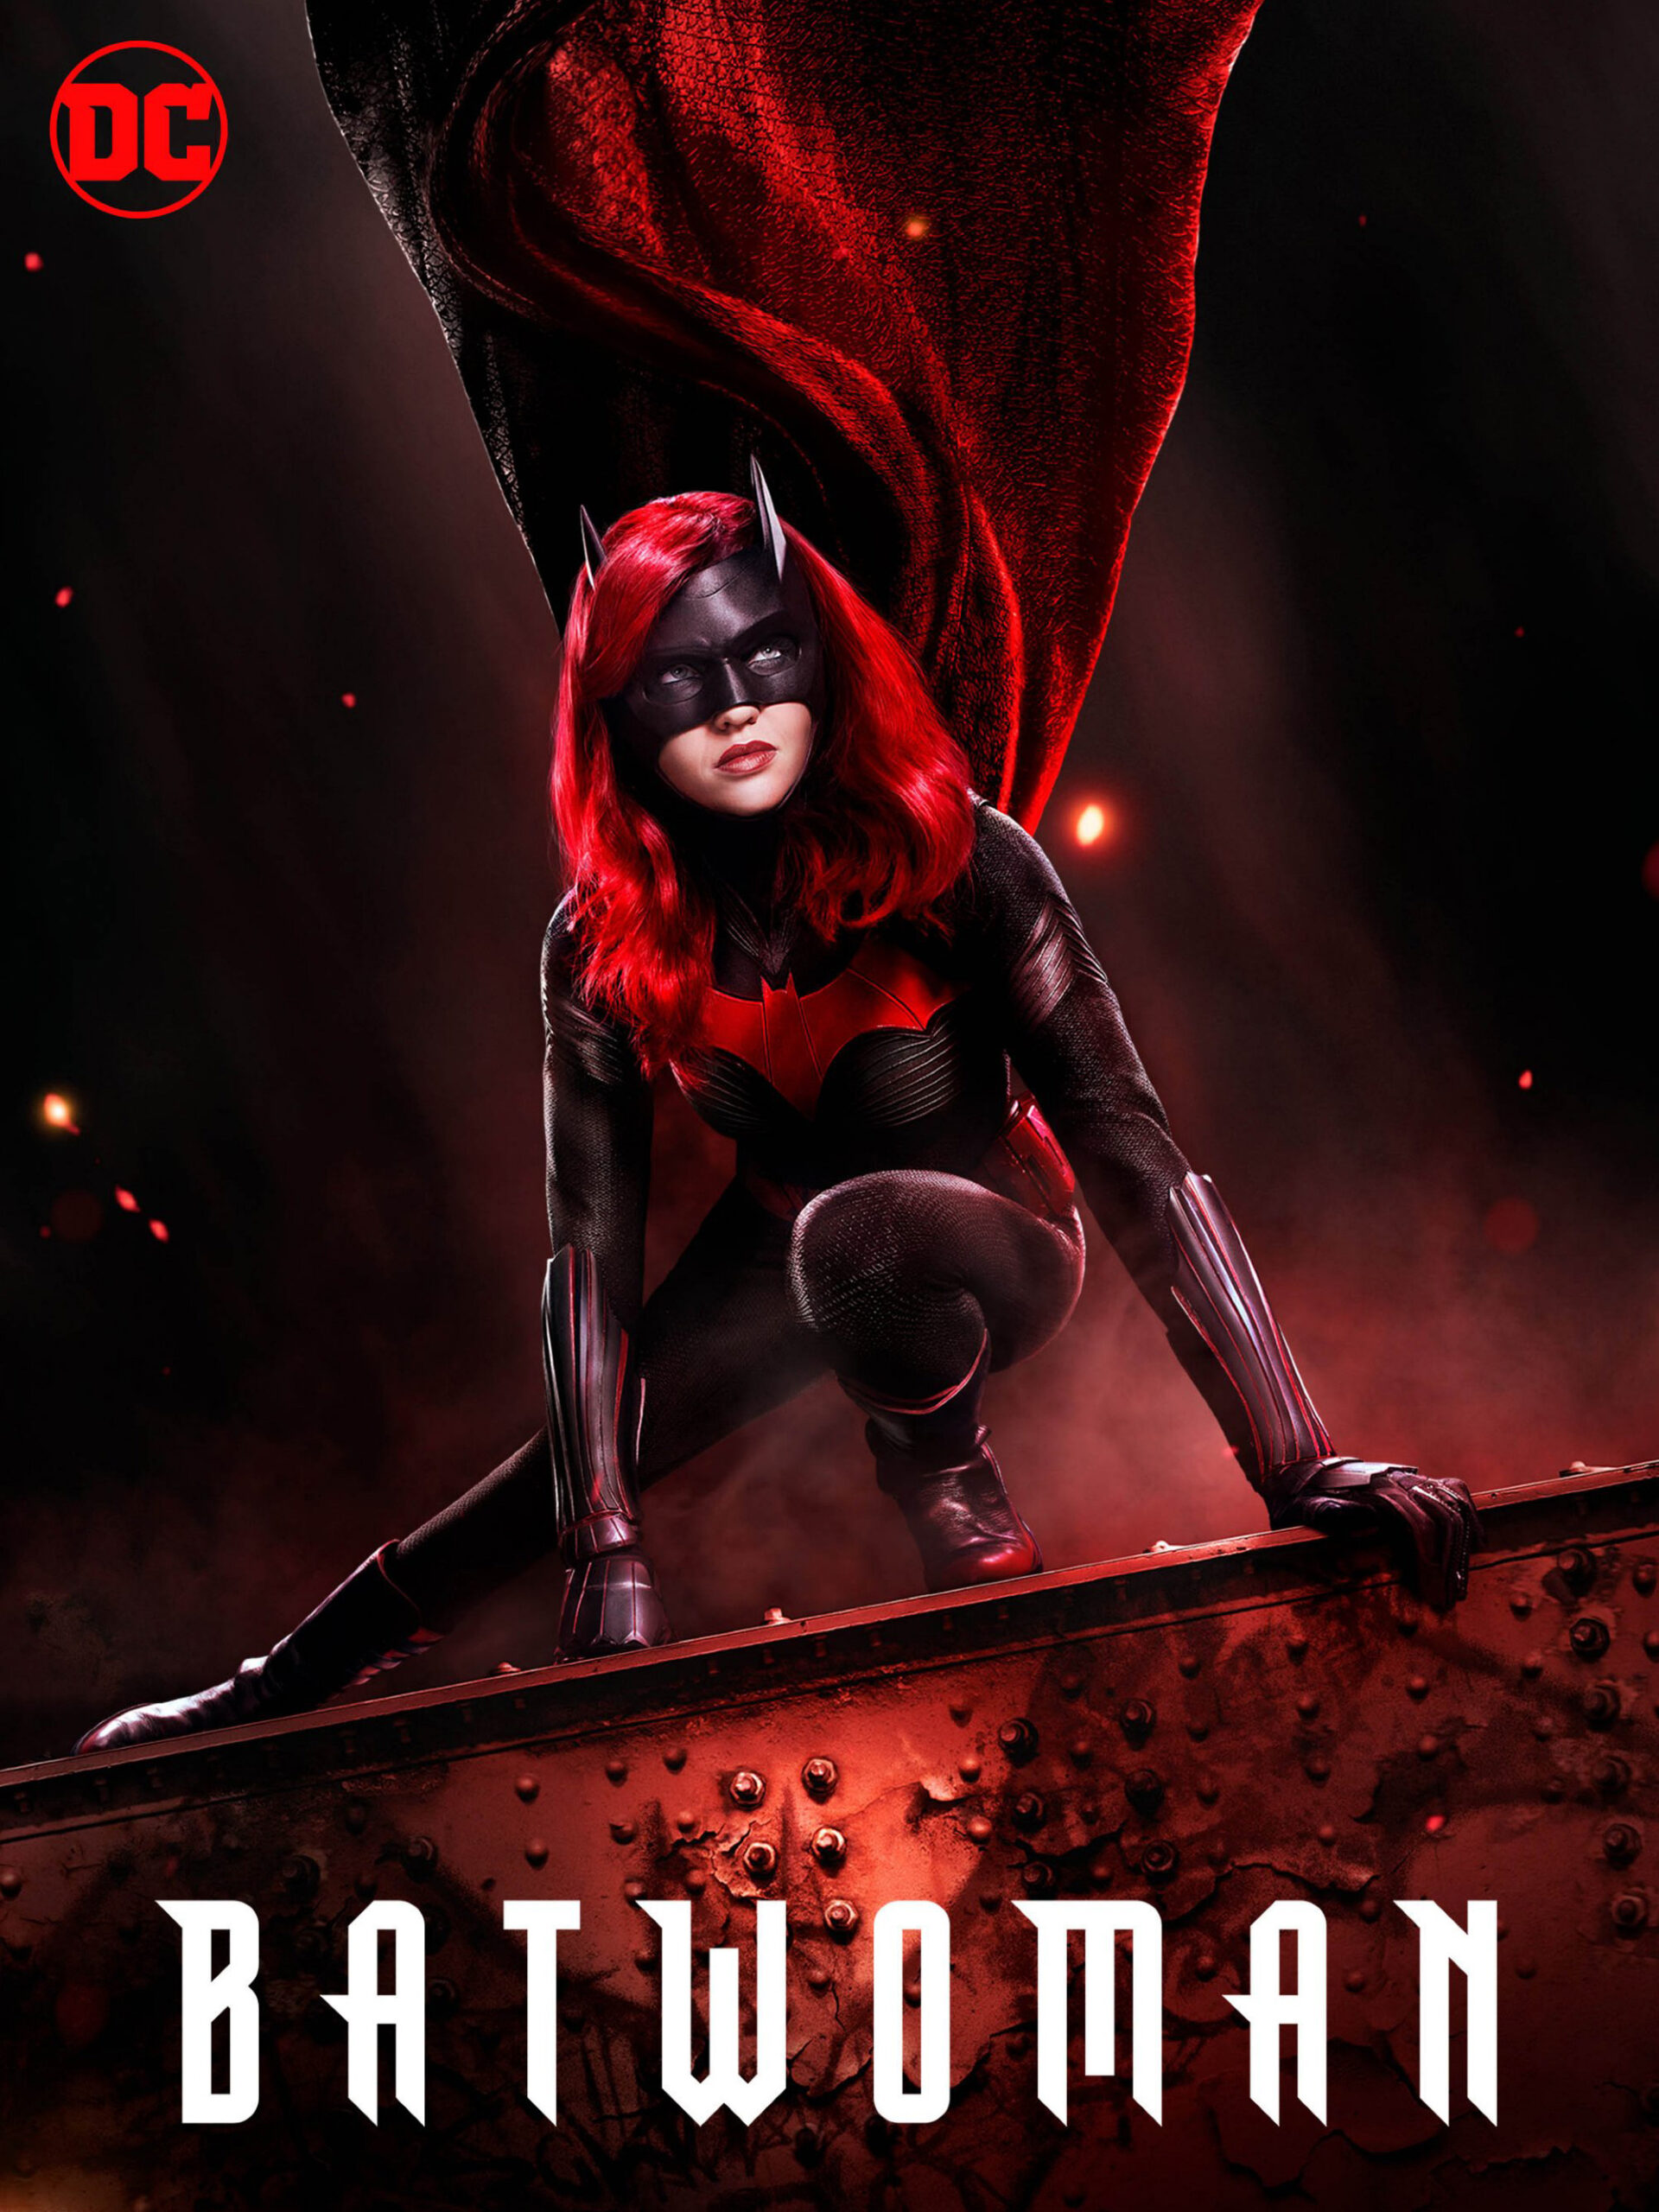 ดูหนังออนไลน์ฟรี Batwoman Season 1 (2019) EP.16 แบทวูแมน ซีซั่น 1 ตอนที่ 17 (Soundtrack)